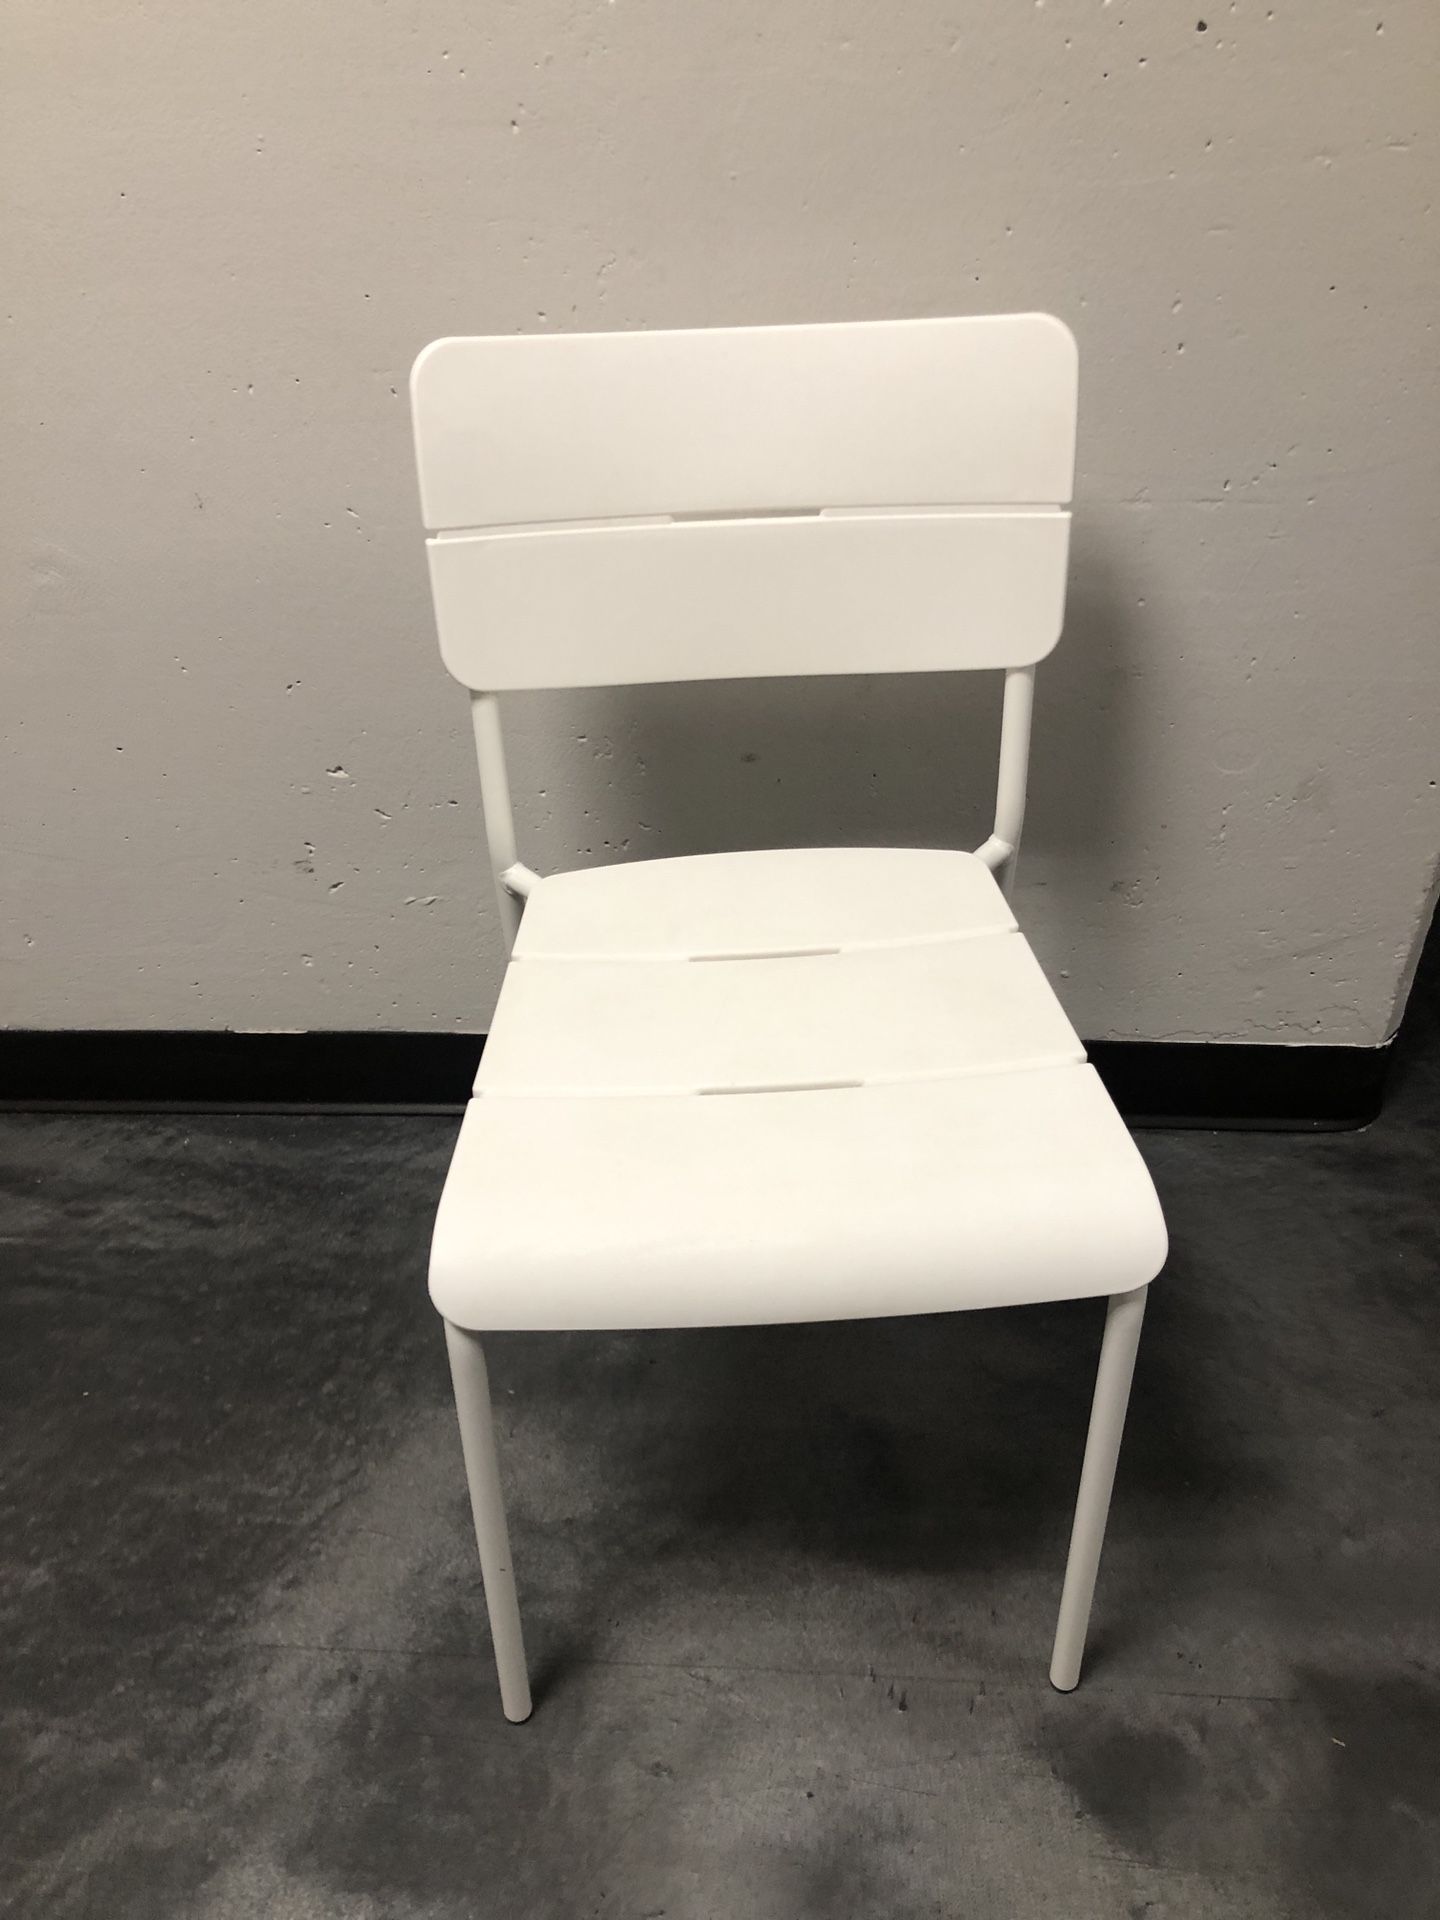 Ikea VÄDDÖ Chair, Outdoor, White